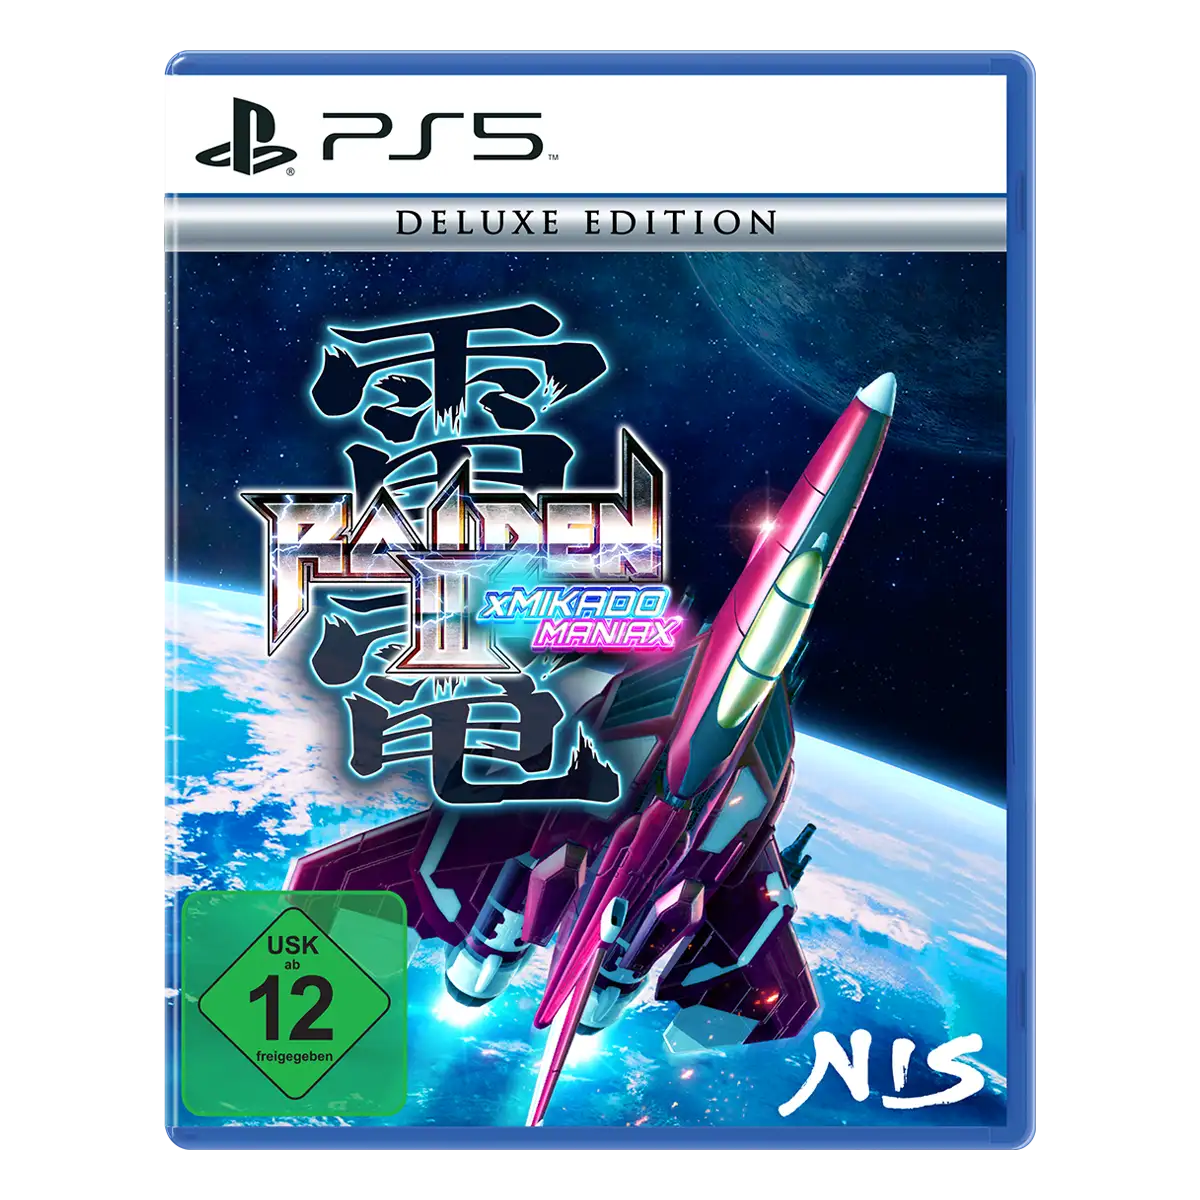 Raiden III x MIKADO MANIAX Deluxe Edition (PS5)